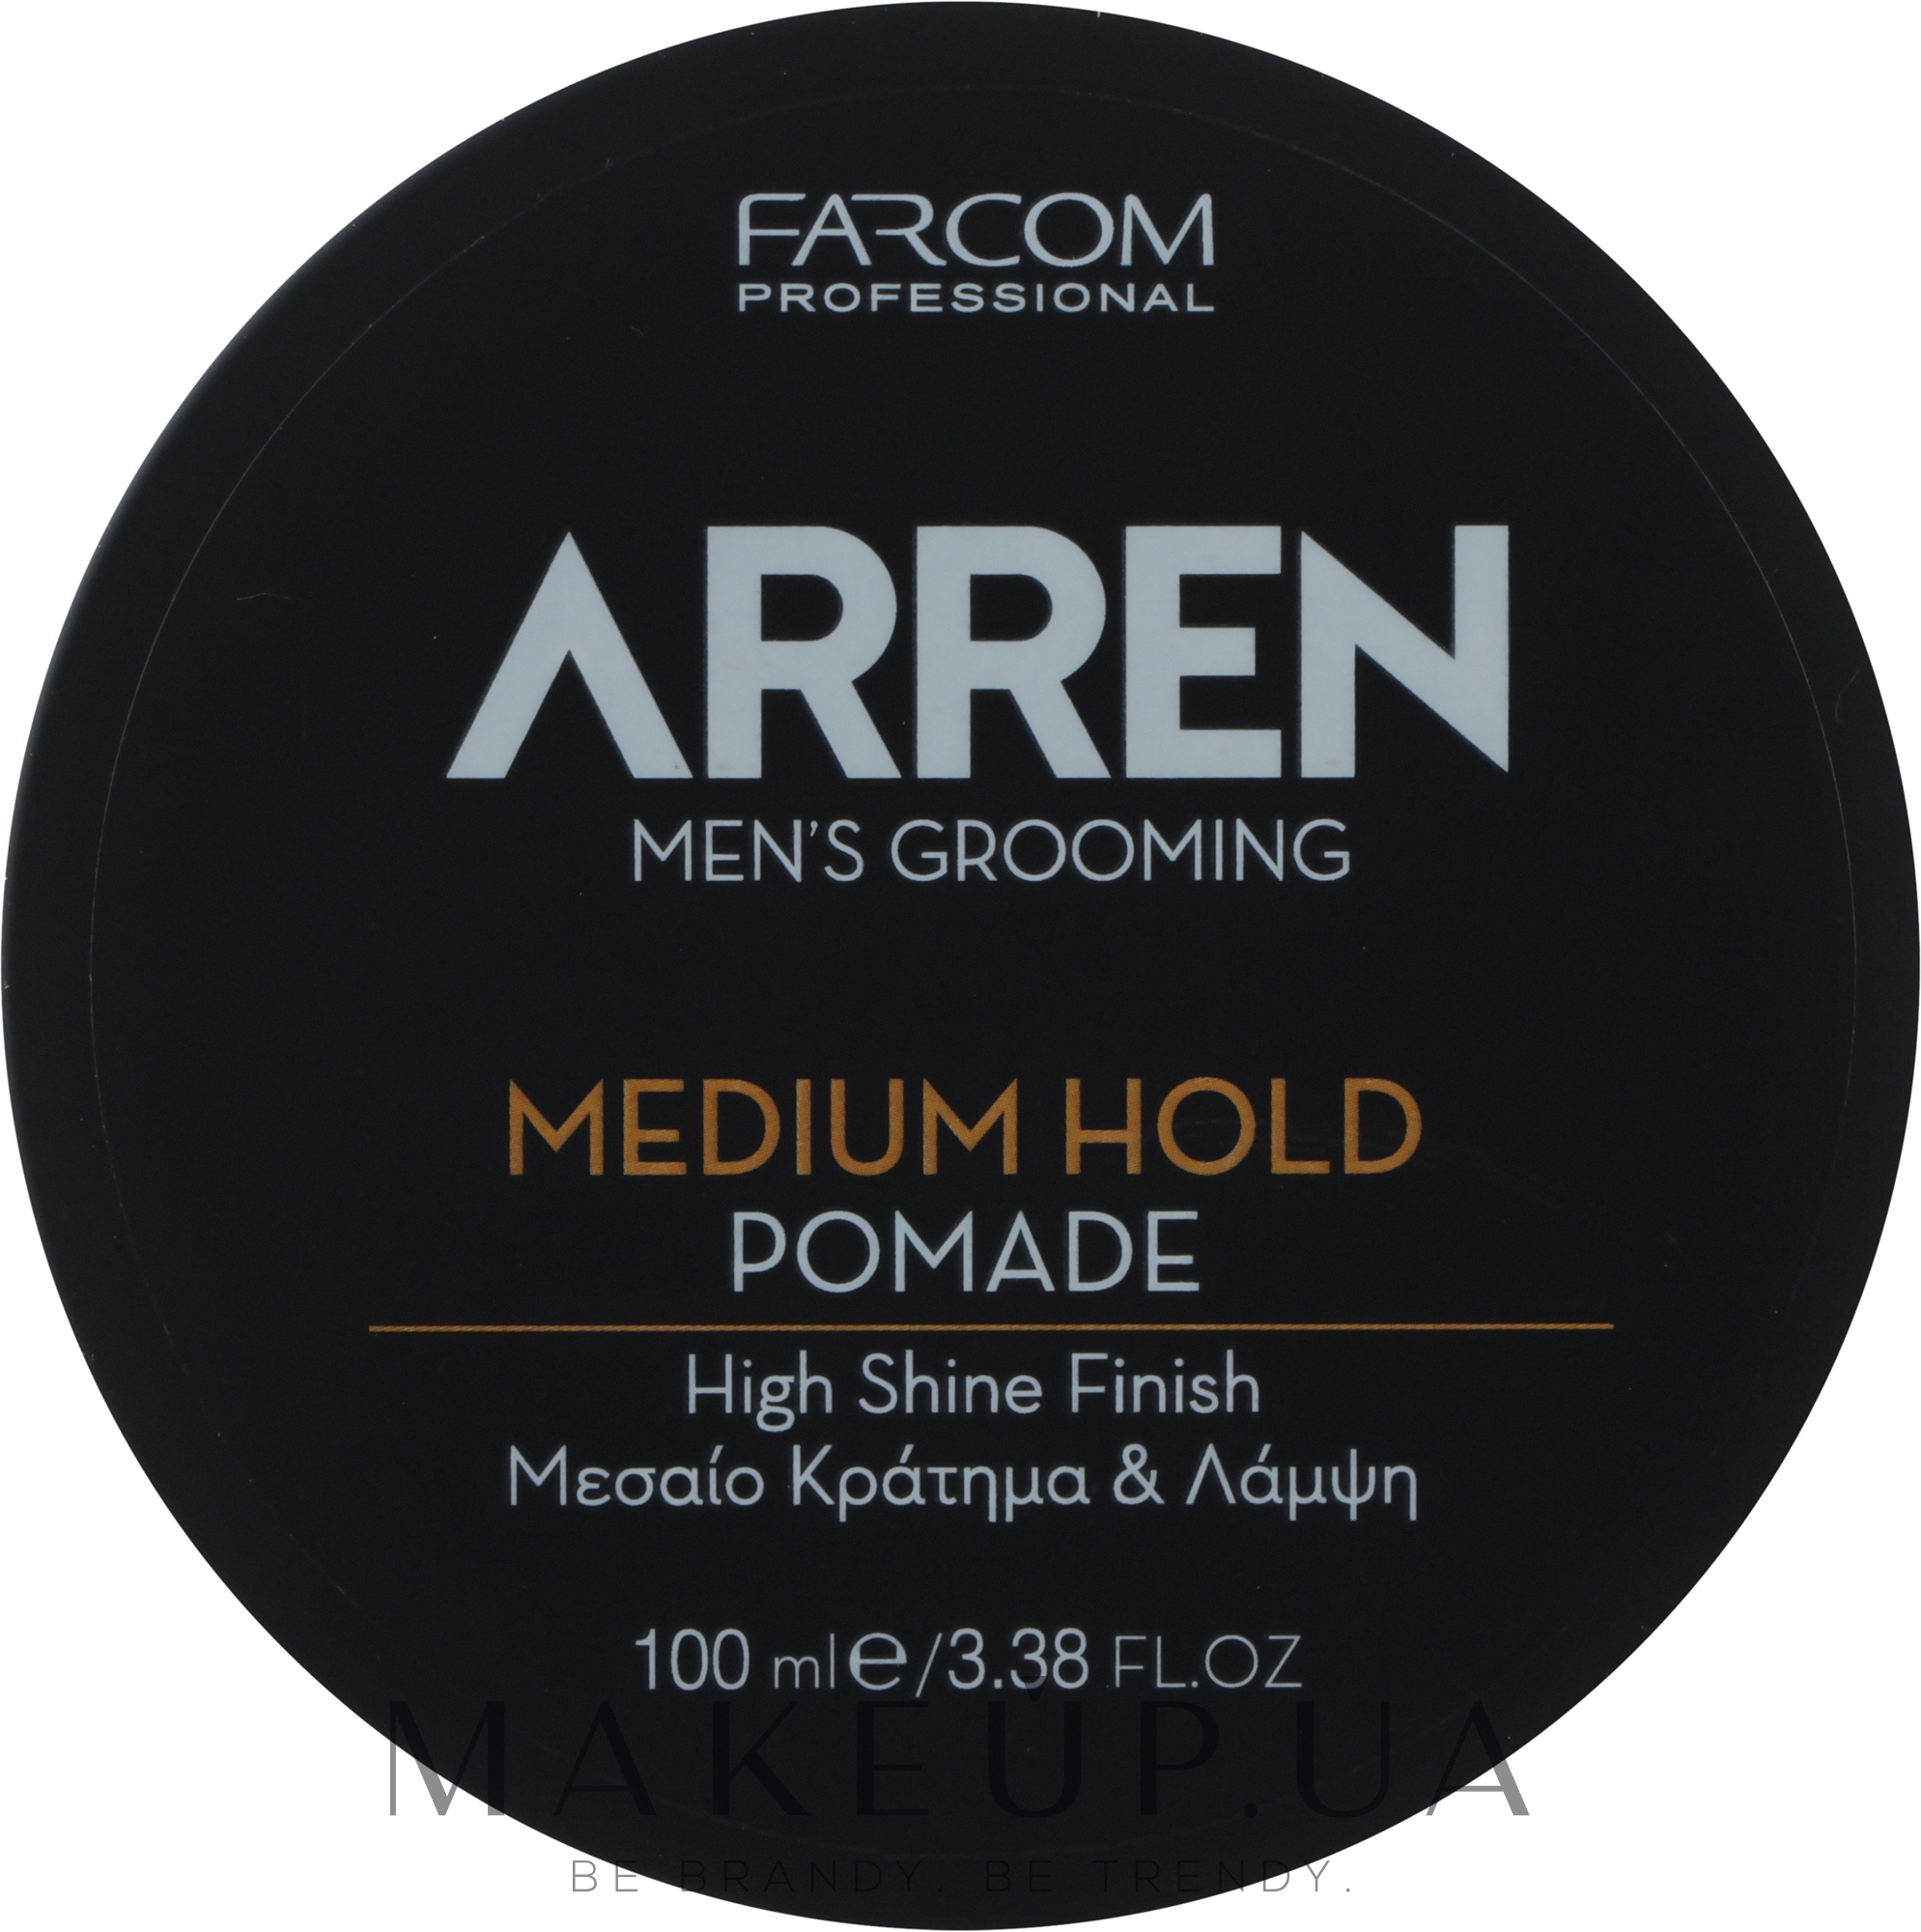 Помадка для укладки волос средней фиксации, глянцевая - Arren Men's Grooming Pomade Medium Hold — фото 100ml